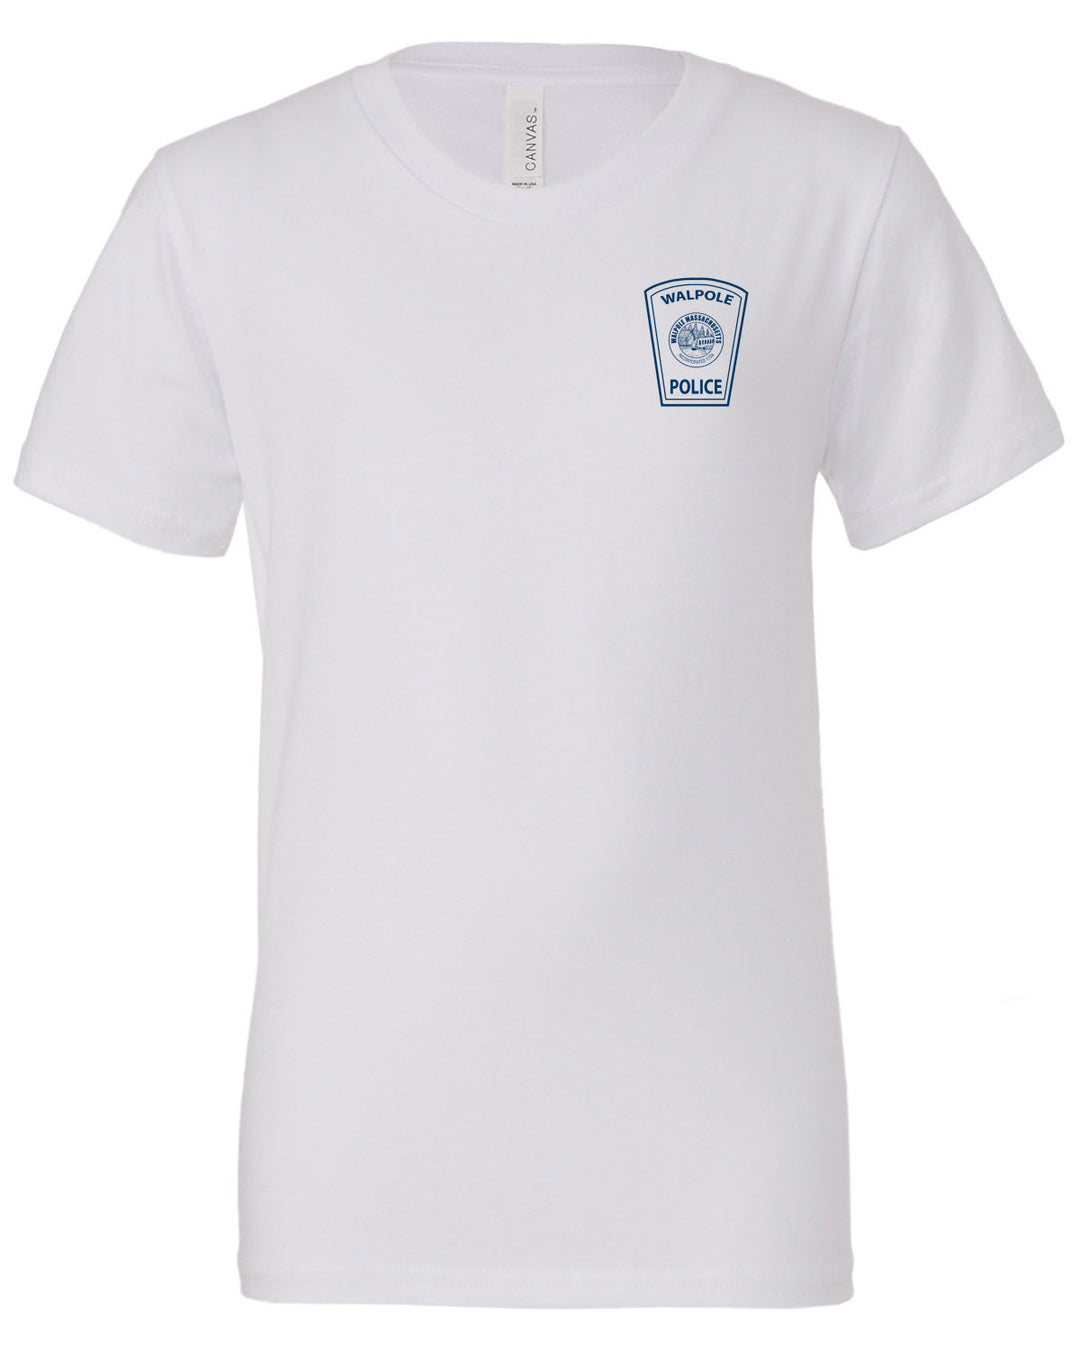 WPD 115 Youth T-Shirt (3001Y)